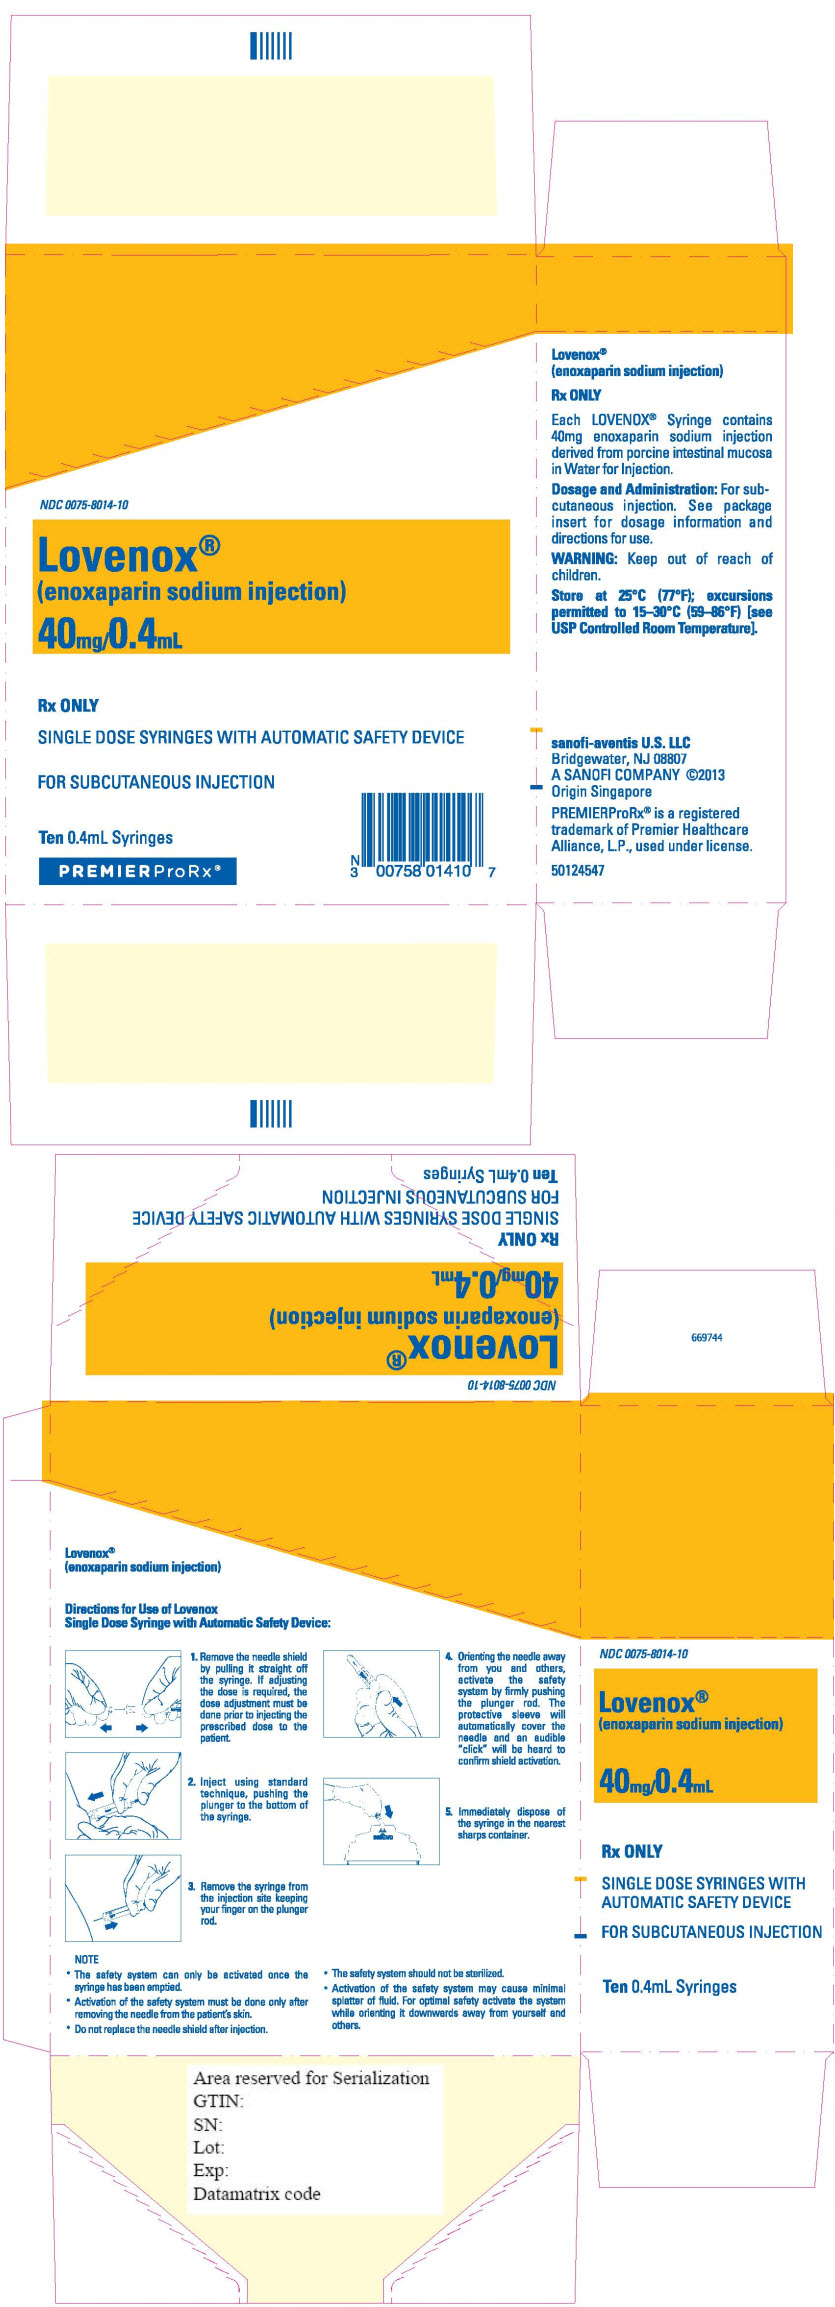 Principal Display Panel - 40 mg/0.4 mL Syringe Blister Pack Carton